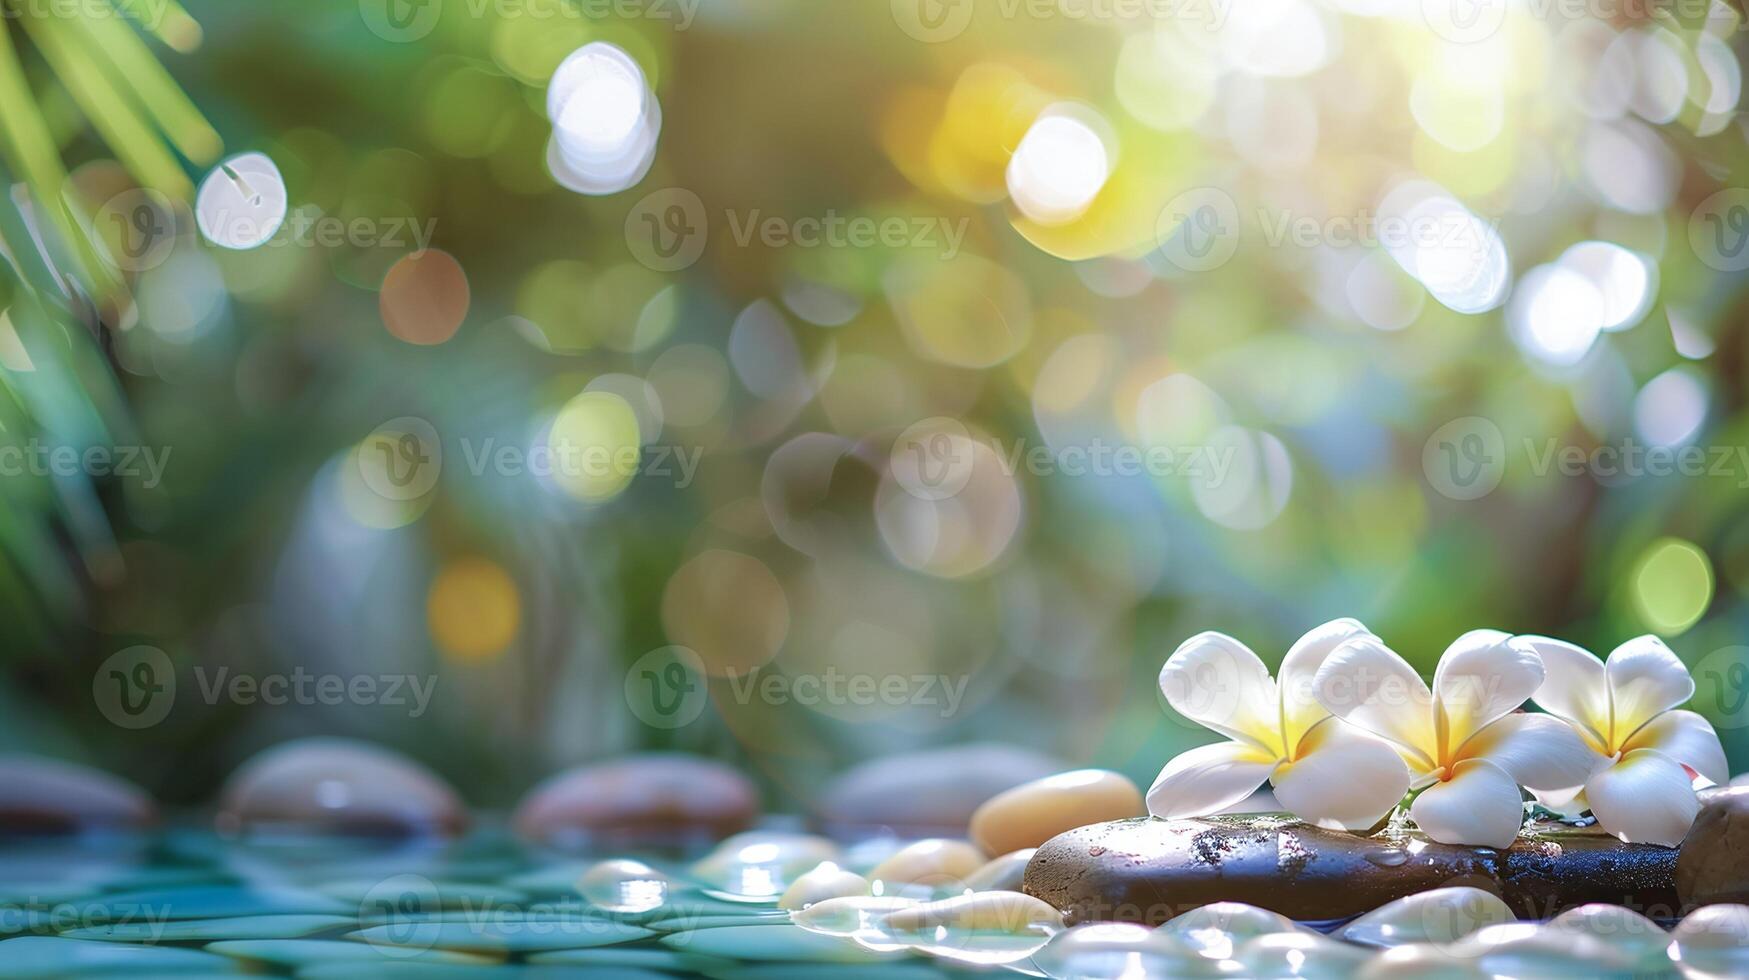 frangipani flores en mojado piedras con suave bokeh luz, un pacífico spa y bienestar retirada escena foto